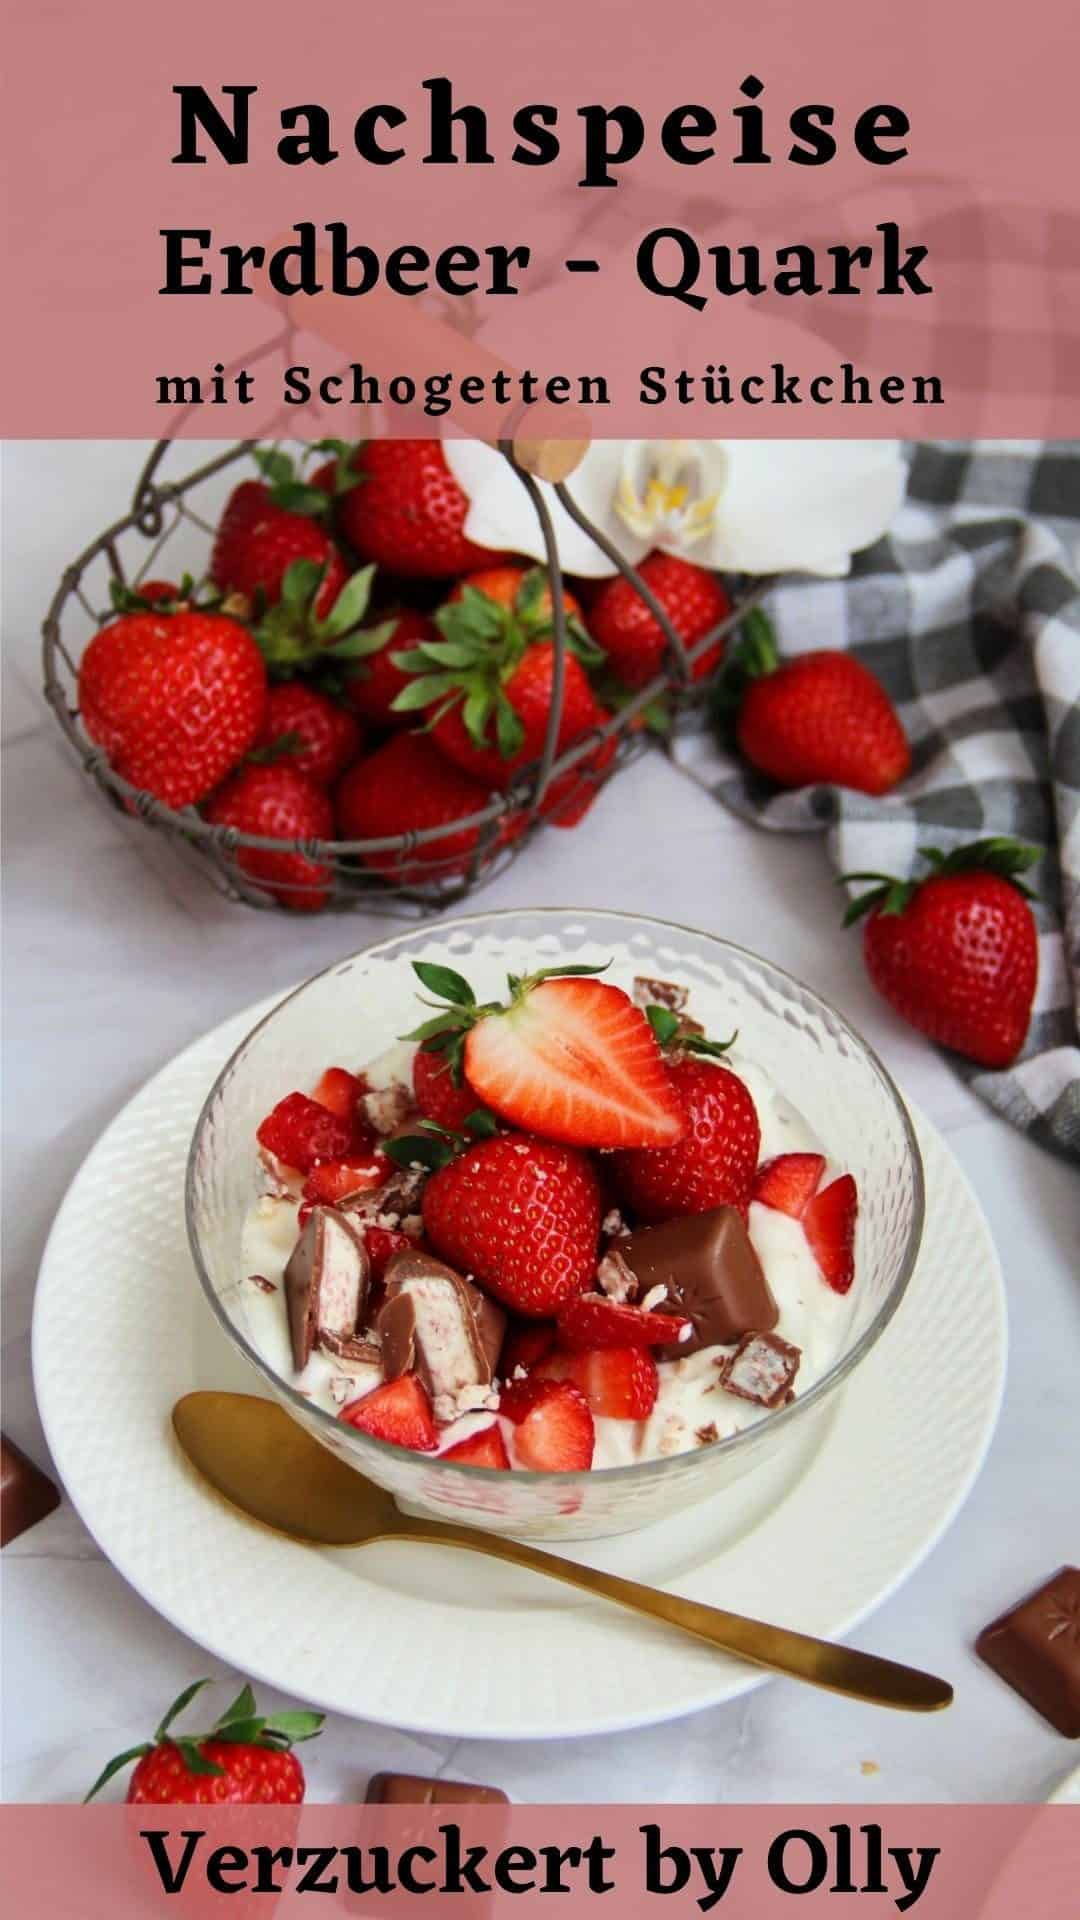 Pin zu Pinterest: Erdbeer-Quark Nachspeise